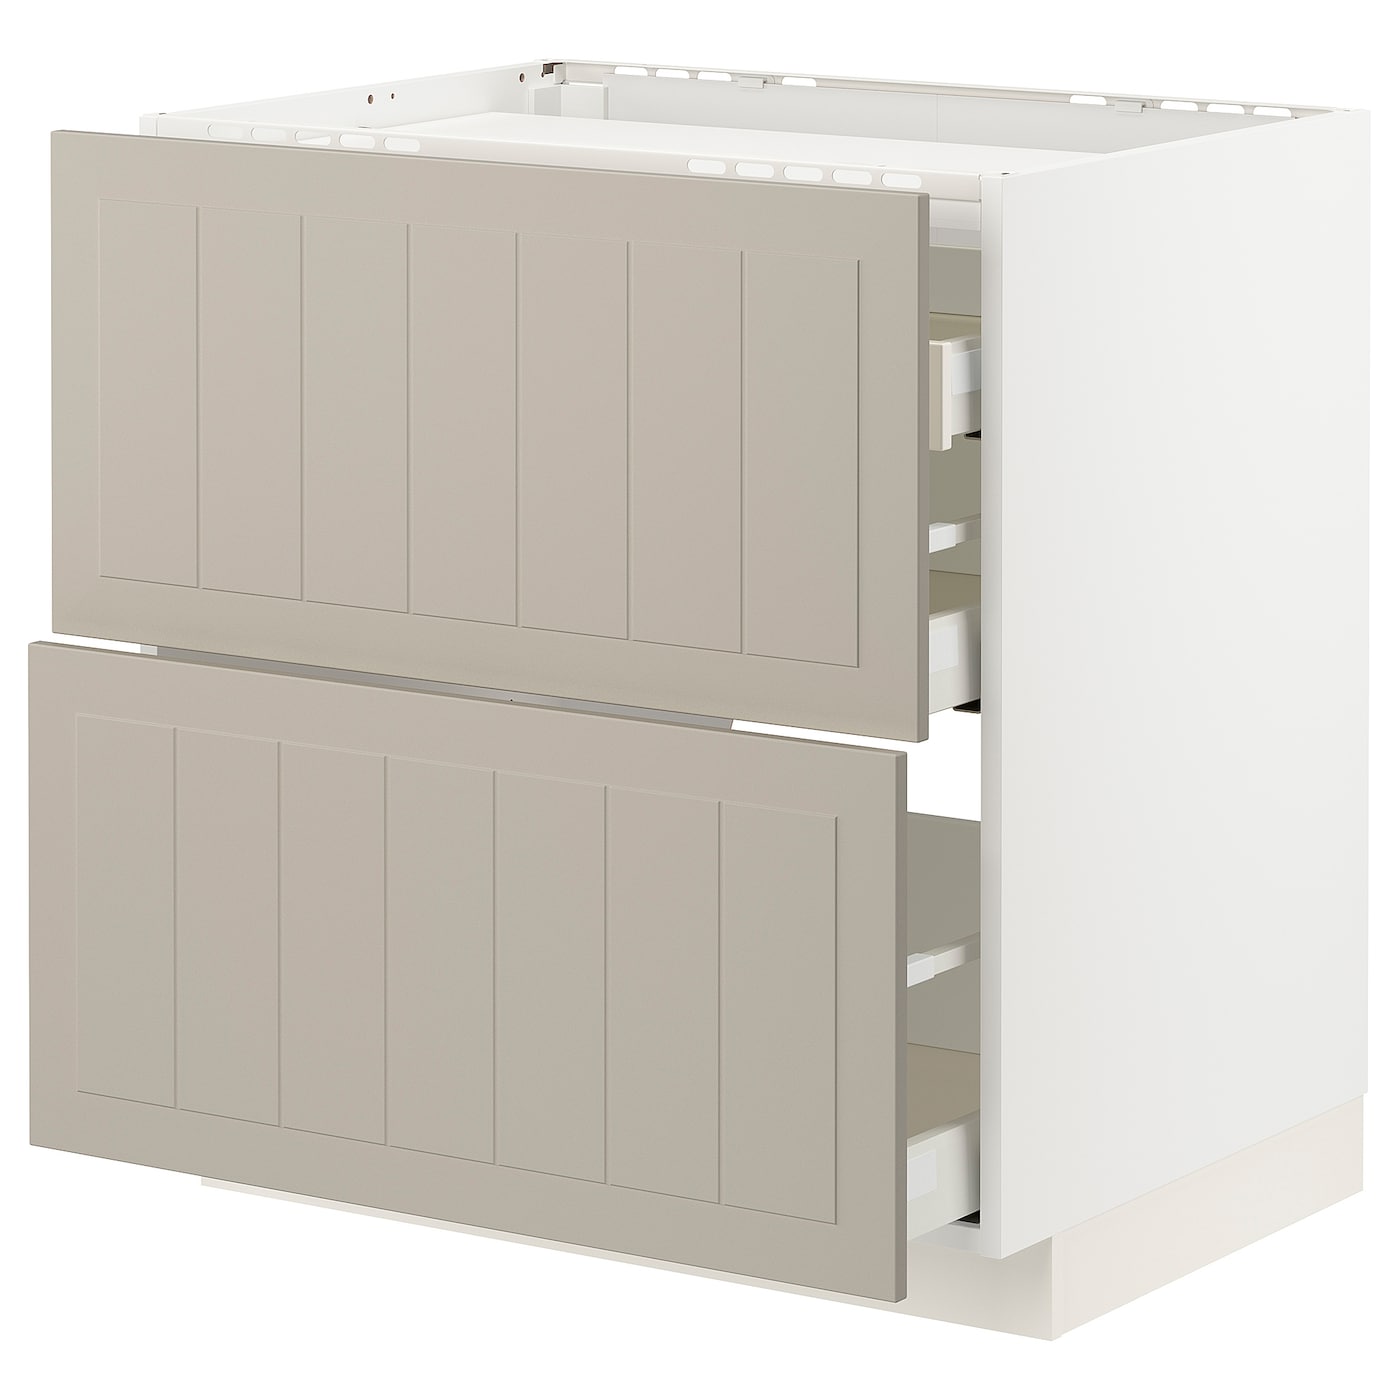 Напольный кухонный шкаф - IKEA METOD MAXIMERA, 88x62x80см, белый/темно-бежевый, МЕТОД МАКСИМЕРА ИКЕА